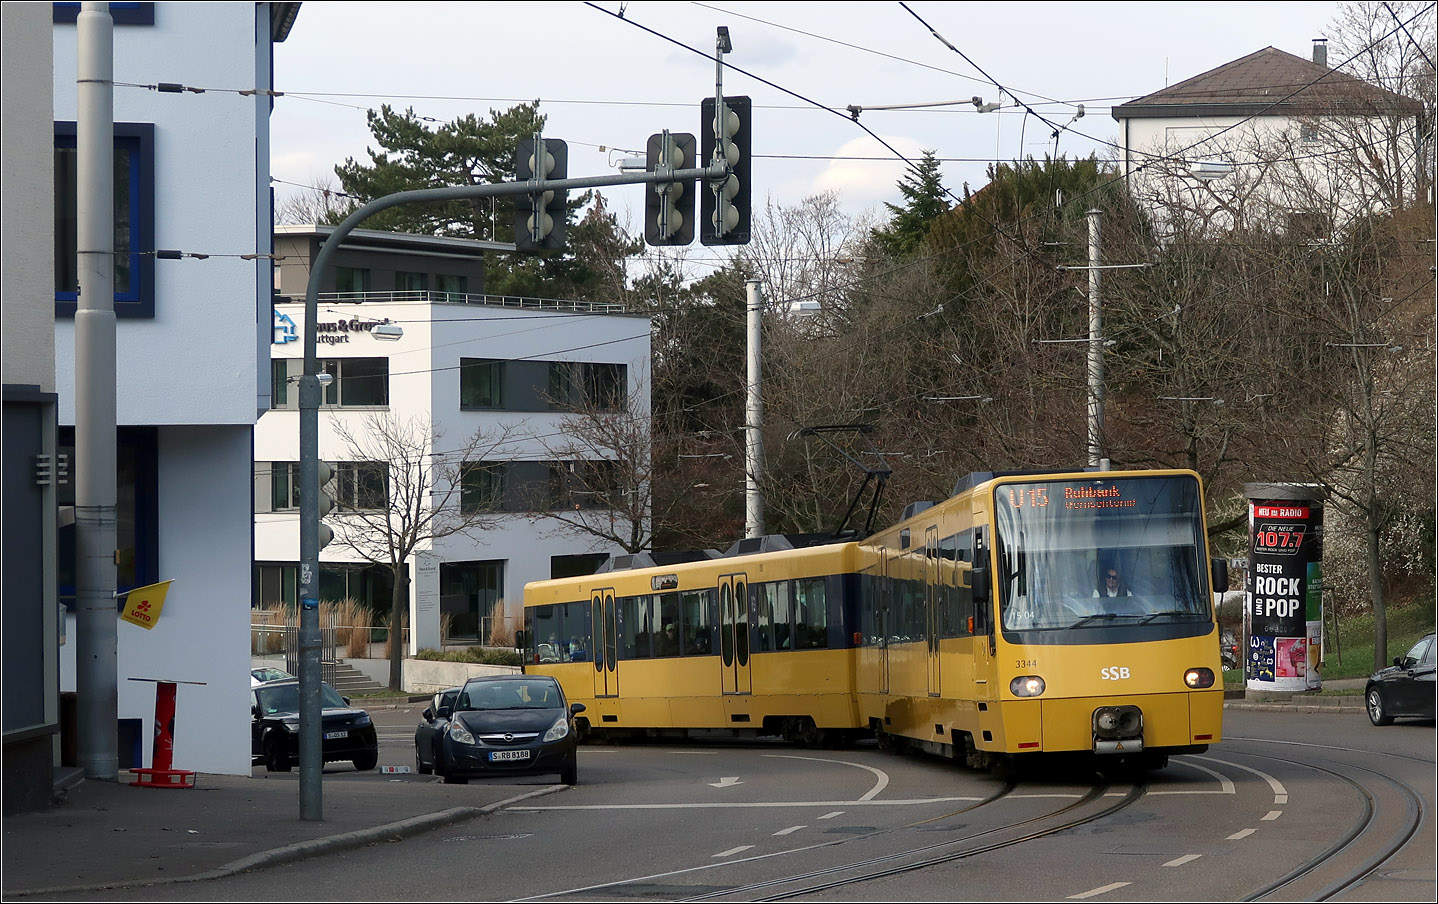 Geglättet - Die 2. Generation - 

... des Stuttgarter Stadtbahnwagen. Die 50 Züge der Serien DT-8.10 und DT-8.11 wurde von 1999 bis 2005 gebaut. Im Vergleich zum Vorgänger wirkt der Wagenkasten aufgrund der geklebten Fenster glattflächig. Der Bereich um die Kupplungen wurde geschlossen. Es gibt jetzt einen Übergang zwischen den beiden Wagen.
Die erste Serie 8.10 (3301-3346) wurde von Siemens gebaut, die Serie 8.11 (3347-3400) von Bombardier.
Im Bild die Einheit 3343/44 in der Kehre der Gerokstraße unterhalb der Haltestelle 'Heidehofstraße.'
Hier befindet sich die talwärts führende Röhre des Fildertunnels tief unter dem Standpunkt.

11.03l.2023 (M)